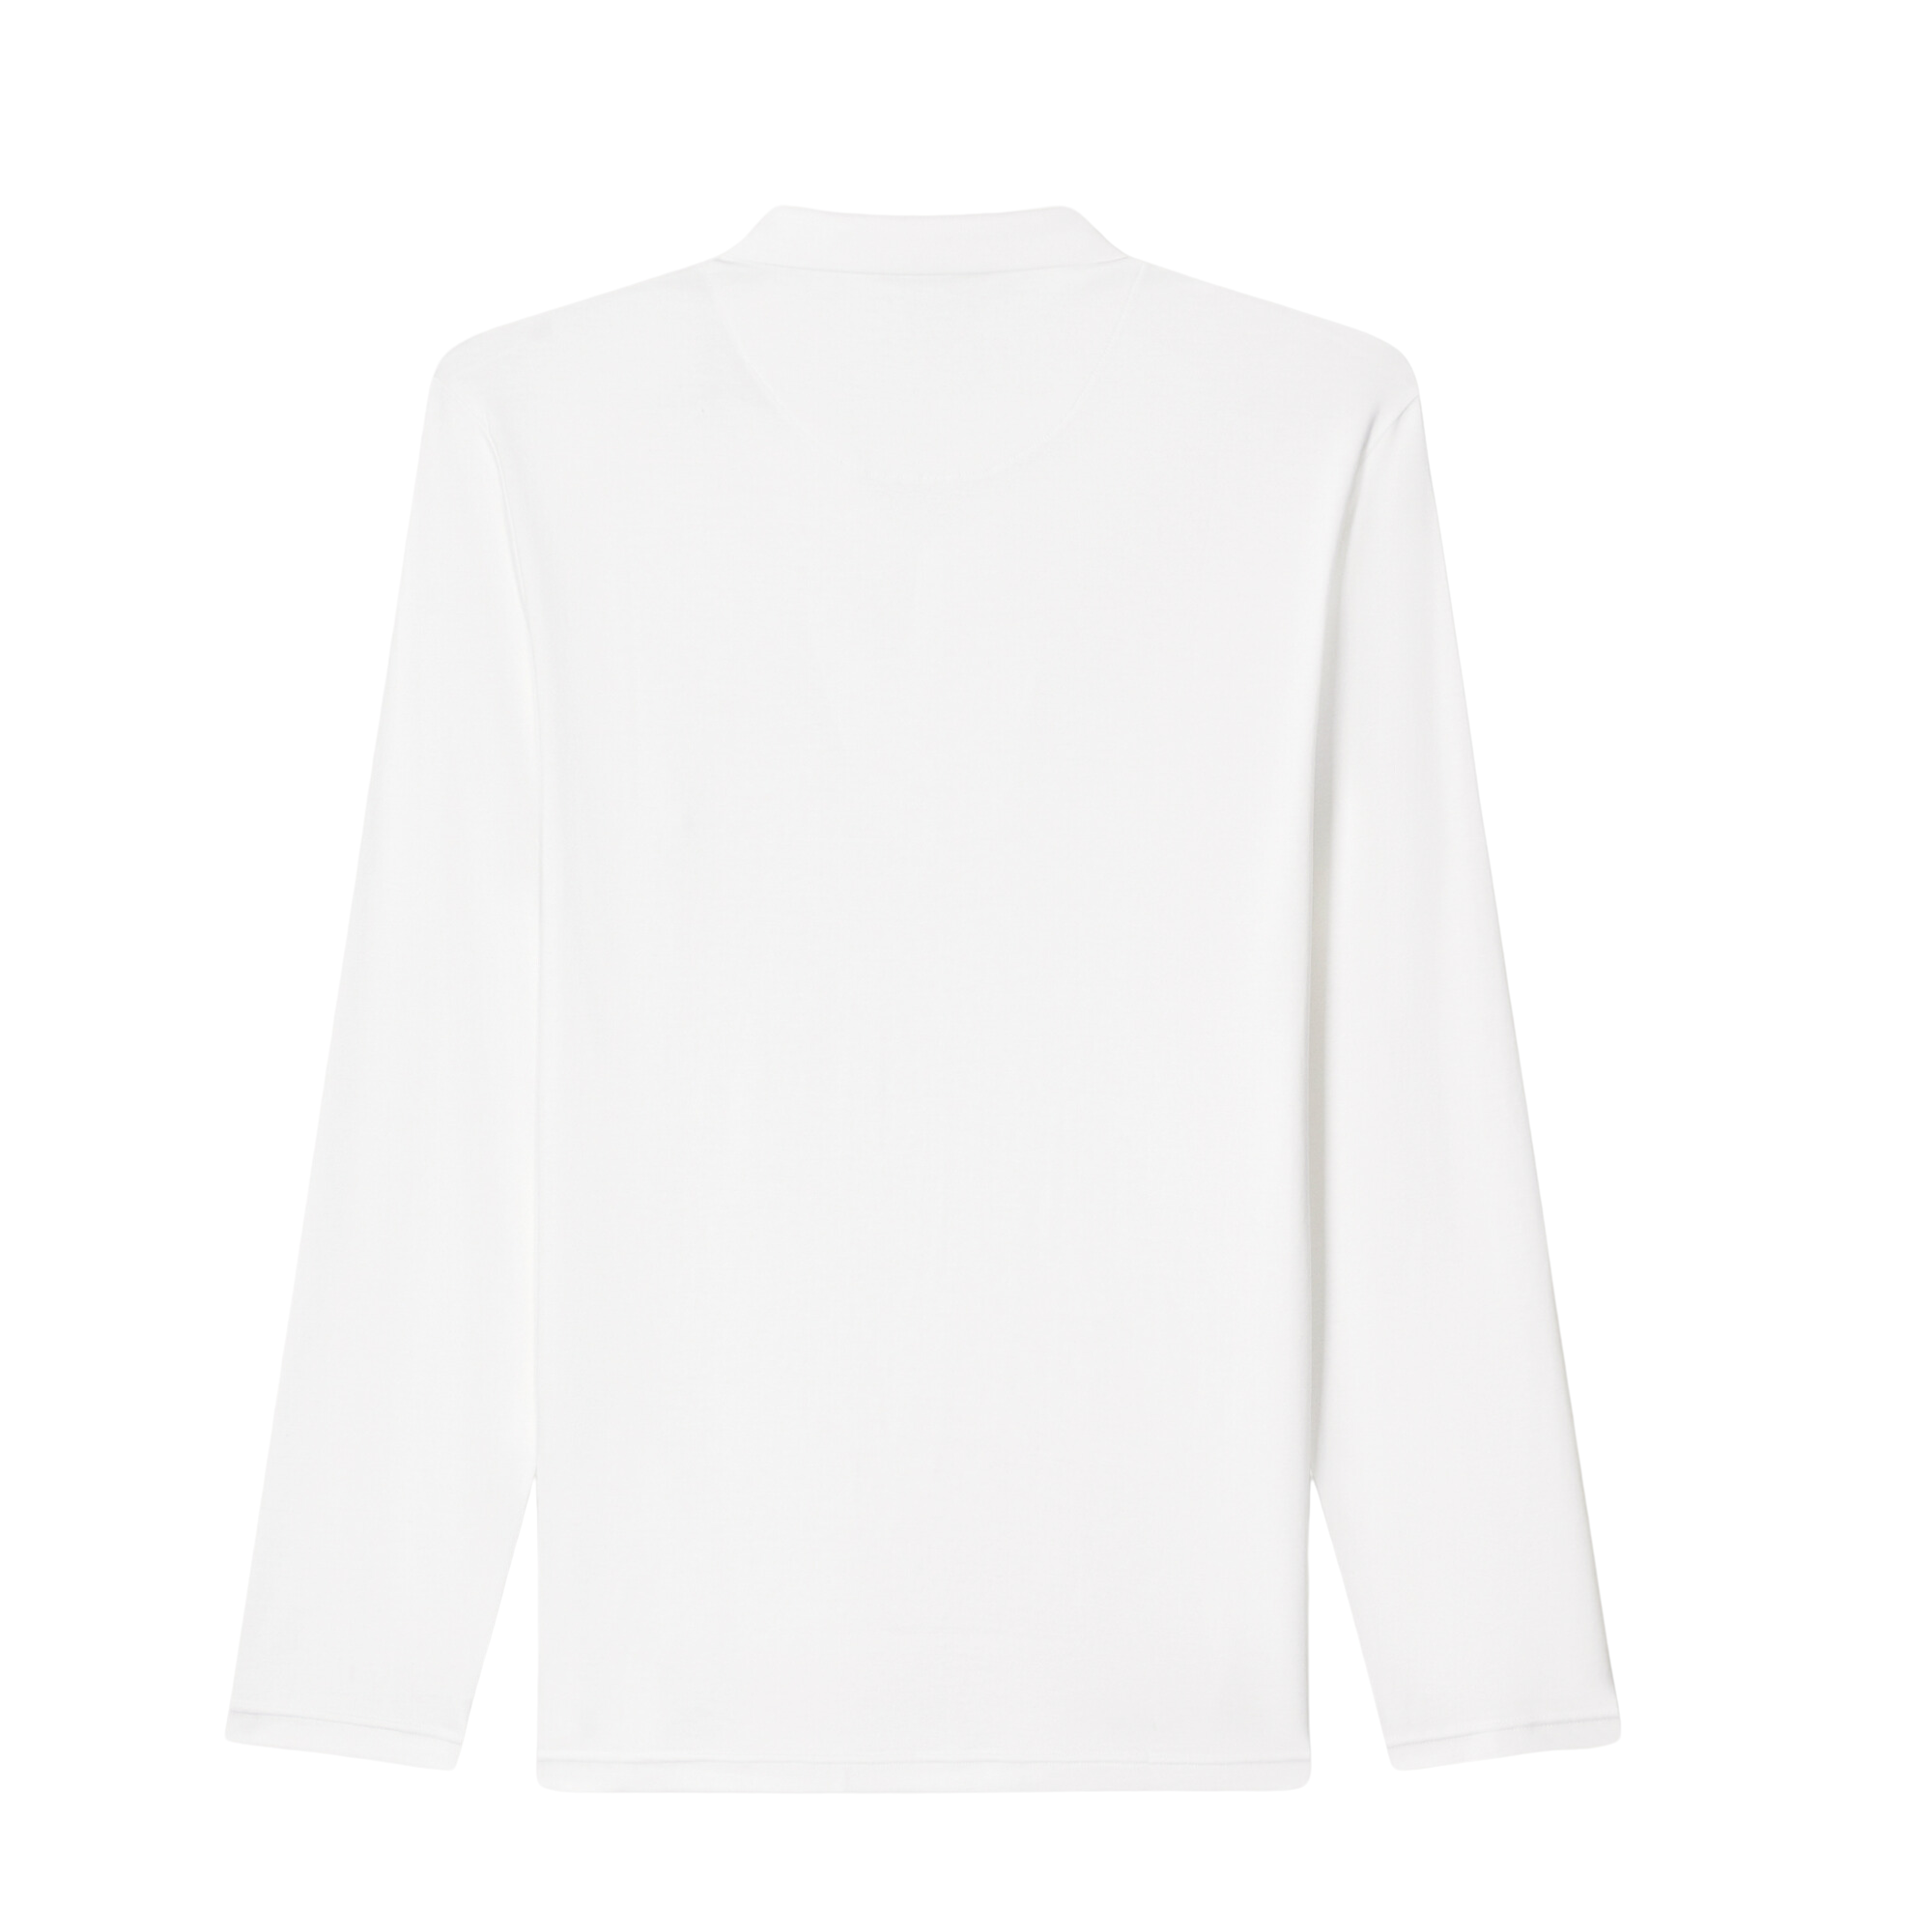 Slim Fit Polo Shirt - White